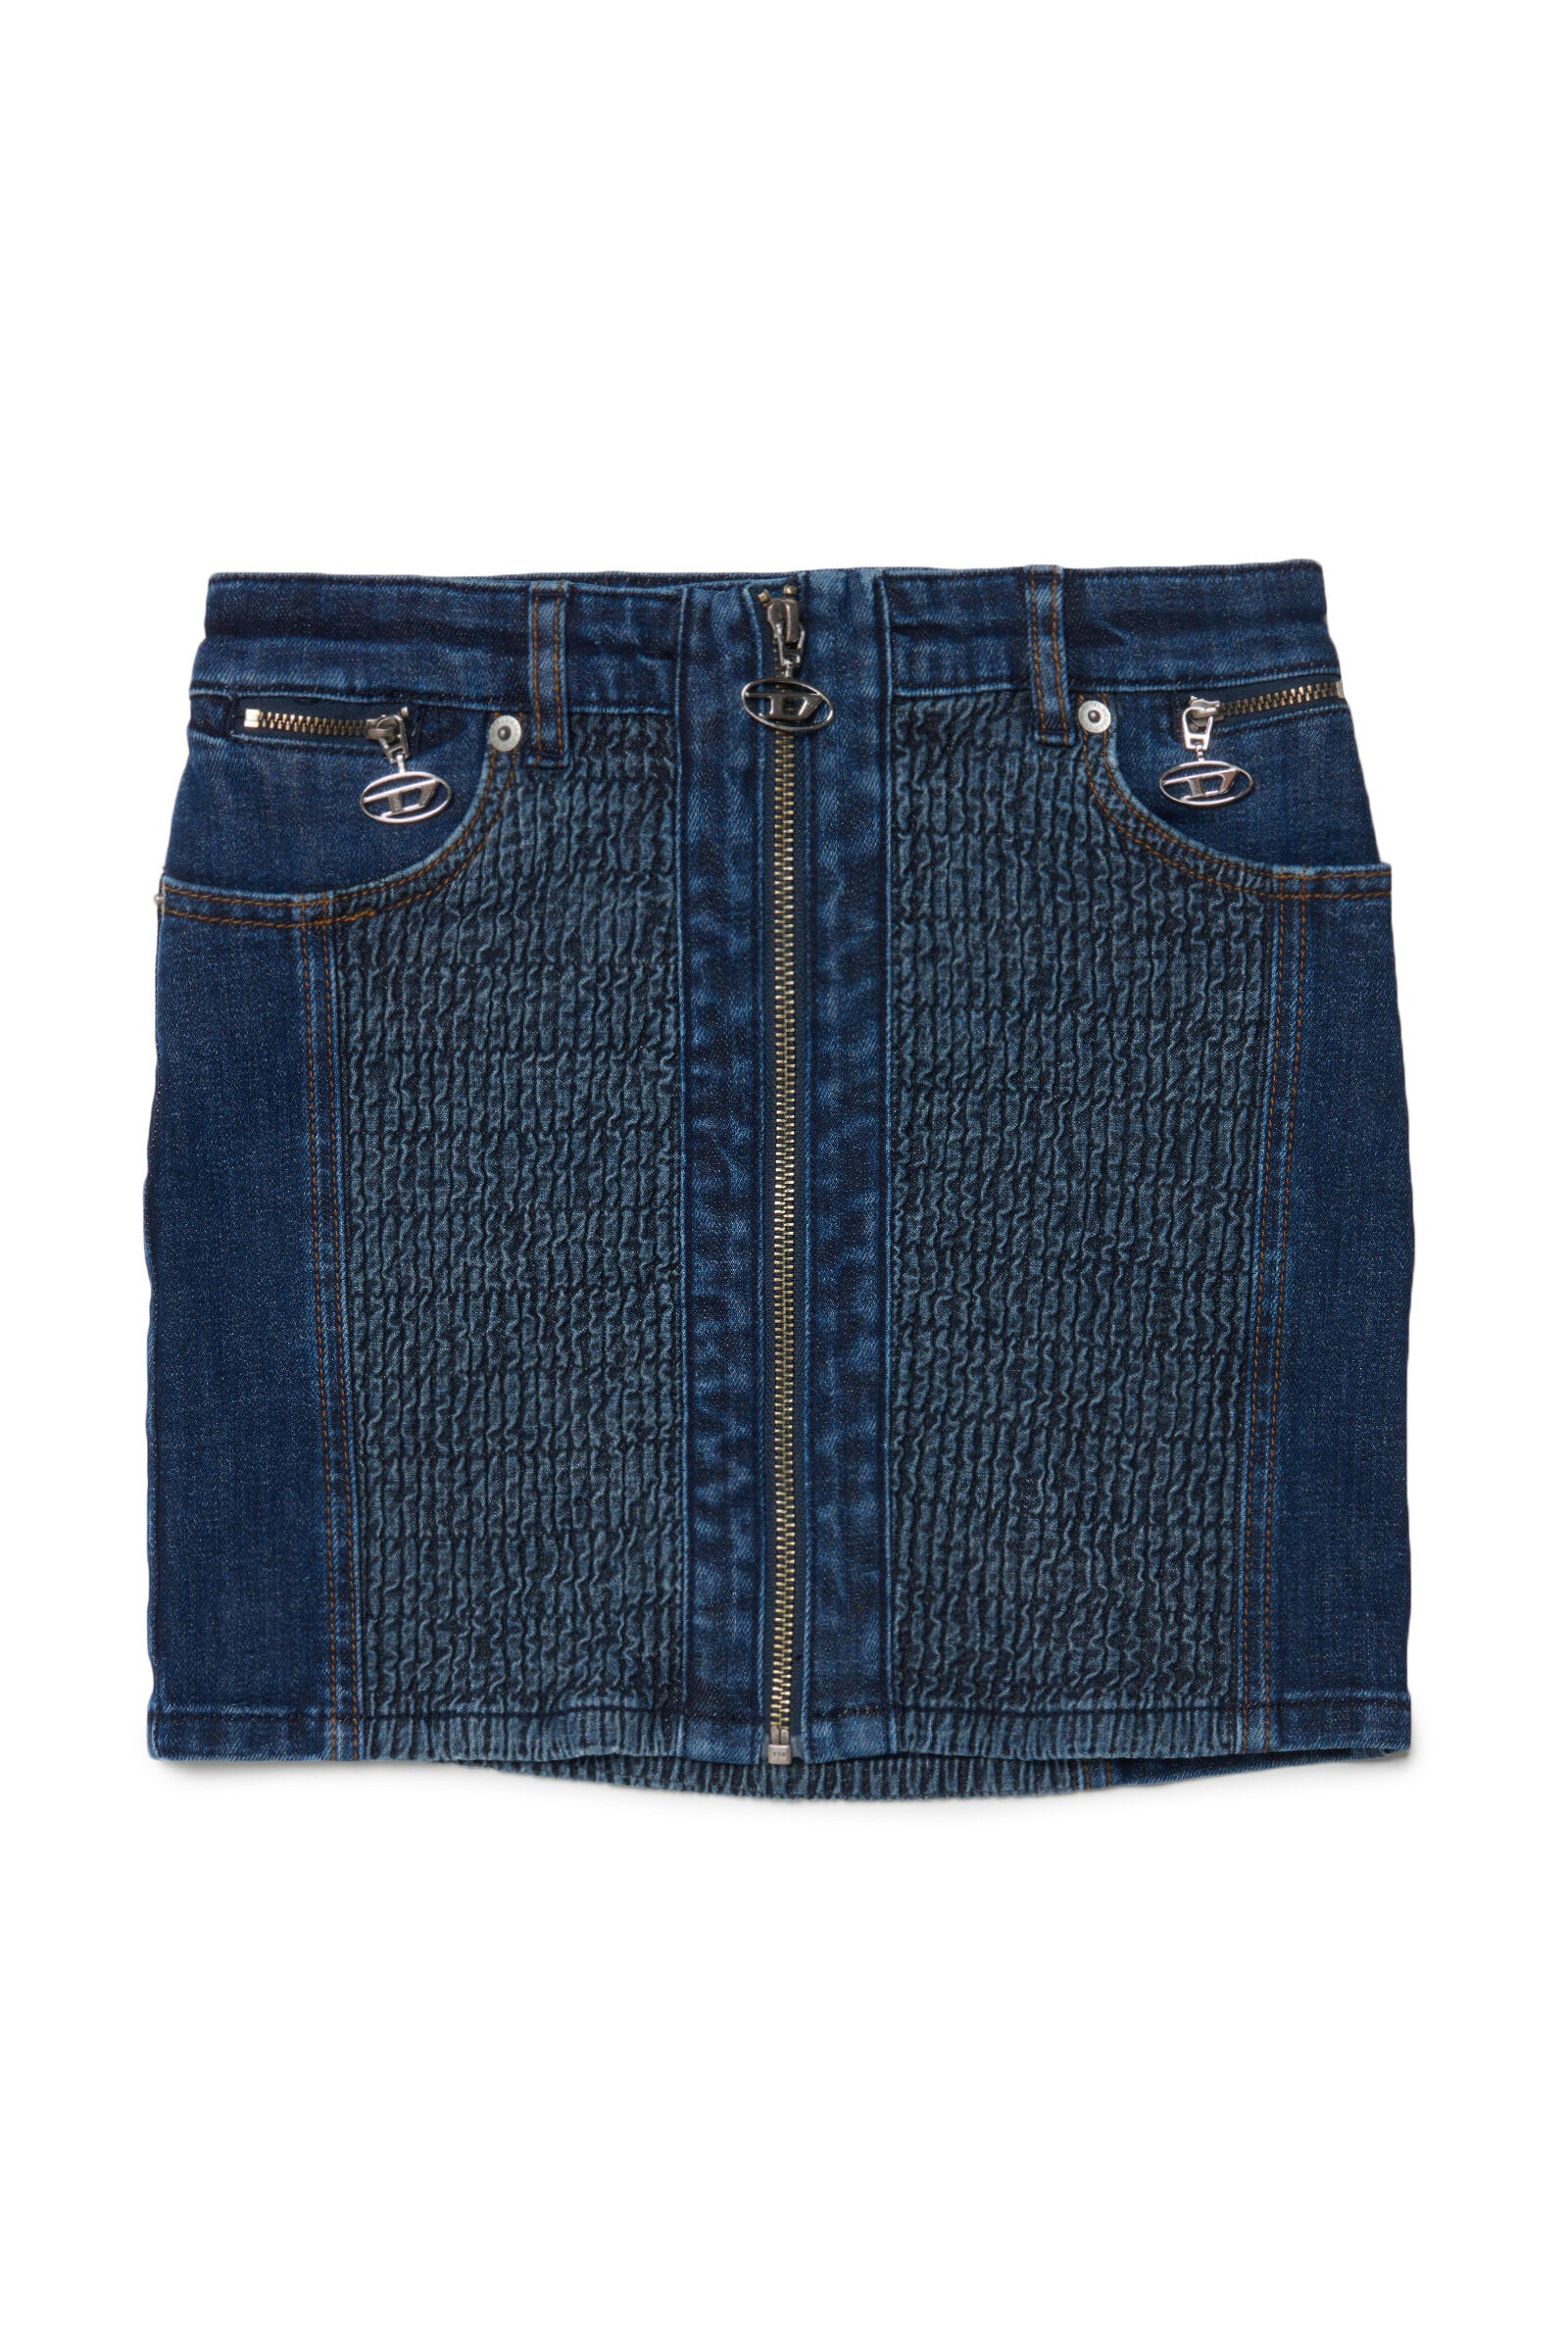 Diesel Kids' Smock Stitch Denim Skirt In Blue | ModeSens